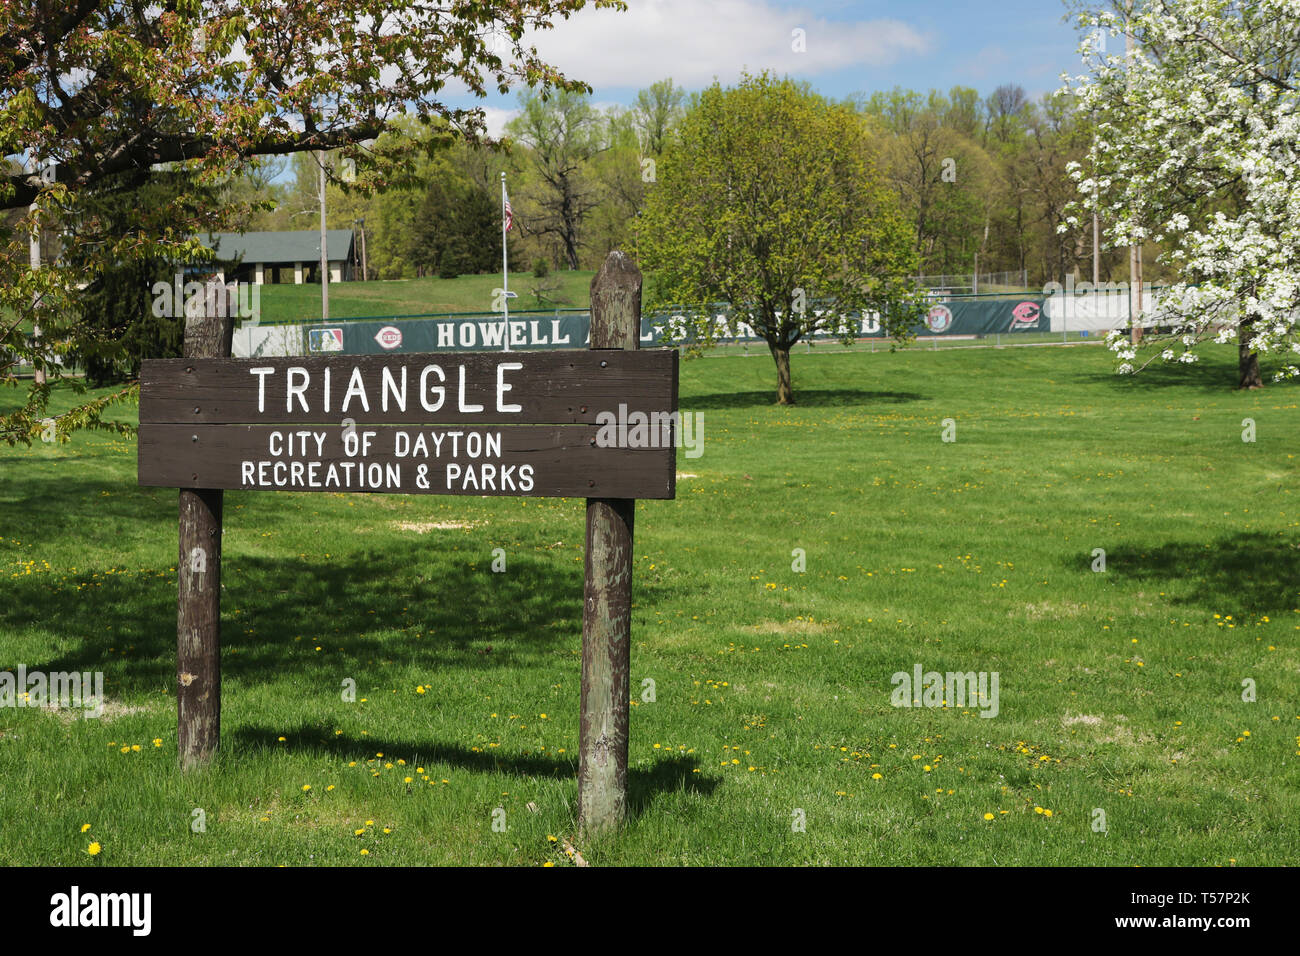 Triangle park signe. Le site de la première partie de football NFL est maintenant le terrain de baseball Howell en Triangle Park, Dayton, Ohio, USA. Marque Historique de l'Ohio Banque D'Images